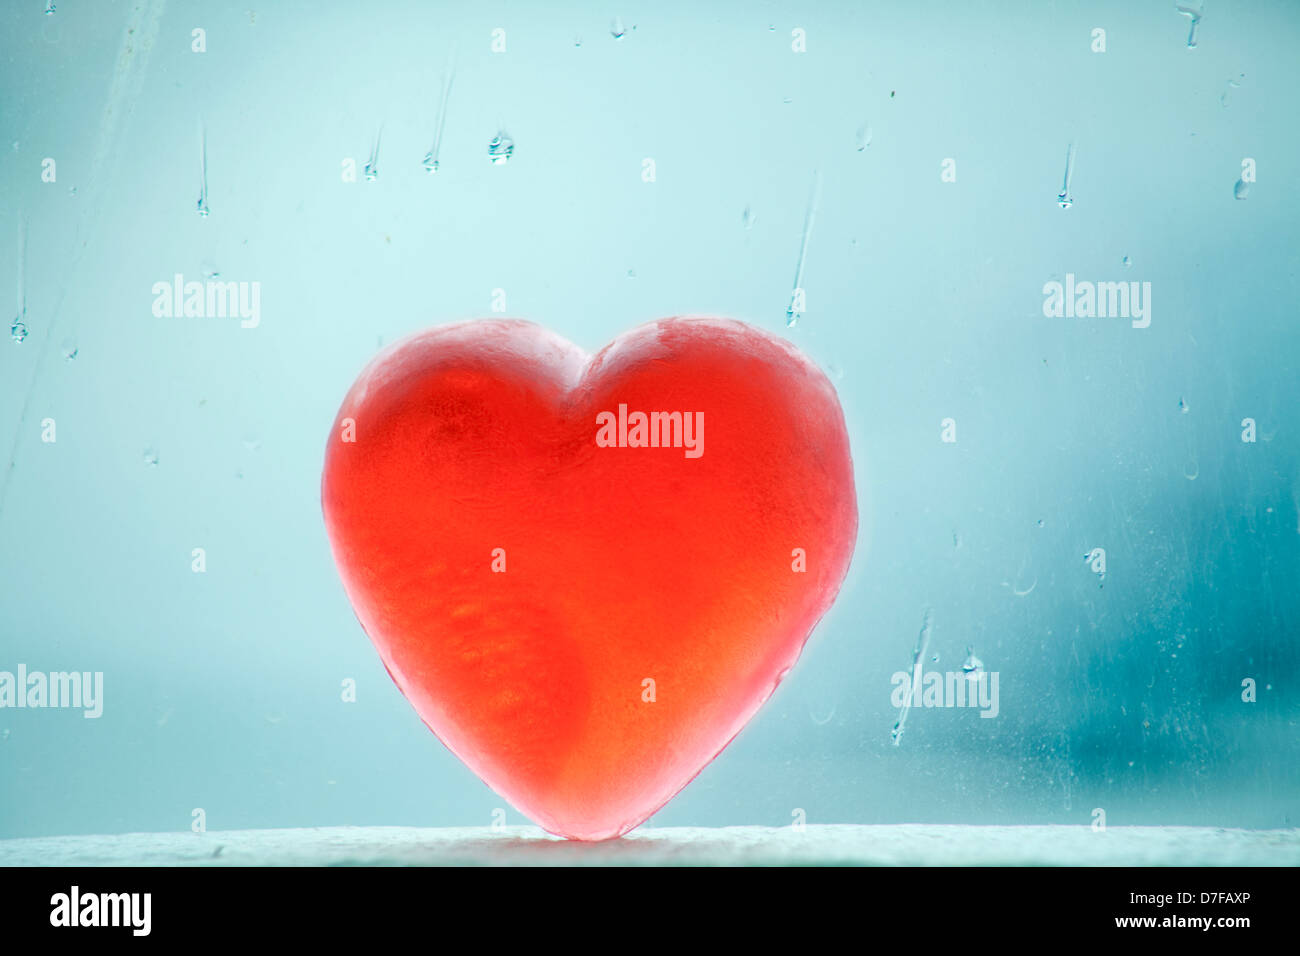 Savon en forme de coeur s'appuyant sur une fenêtre couverte de gouttes de pluie sur une journée d'hiver. Banque D'Images